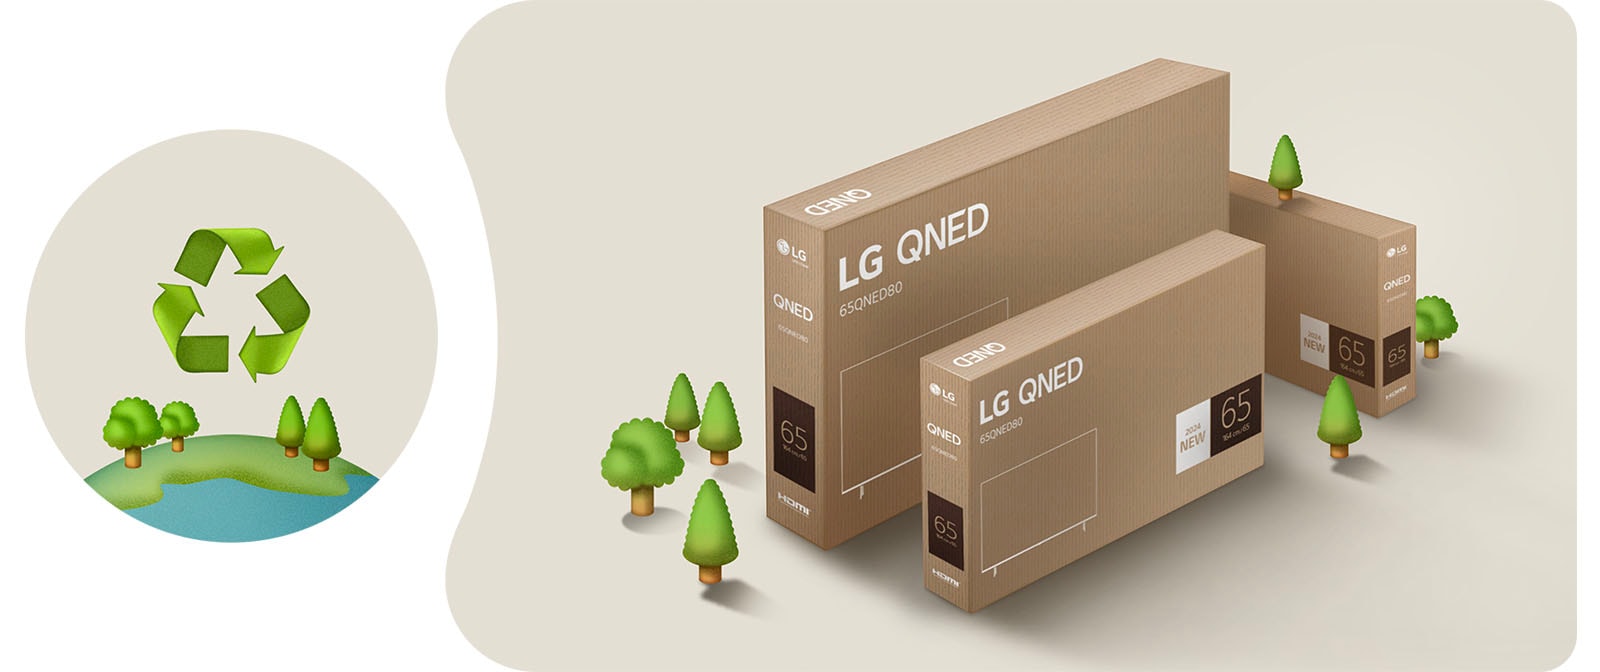 Bao bì LG QNED trên nền màu be có hình cây minh họa.